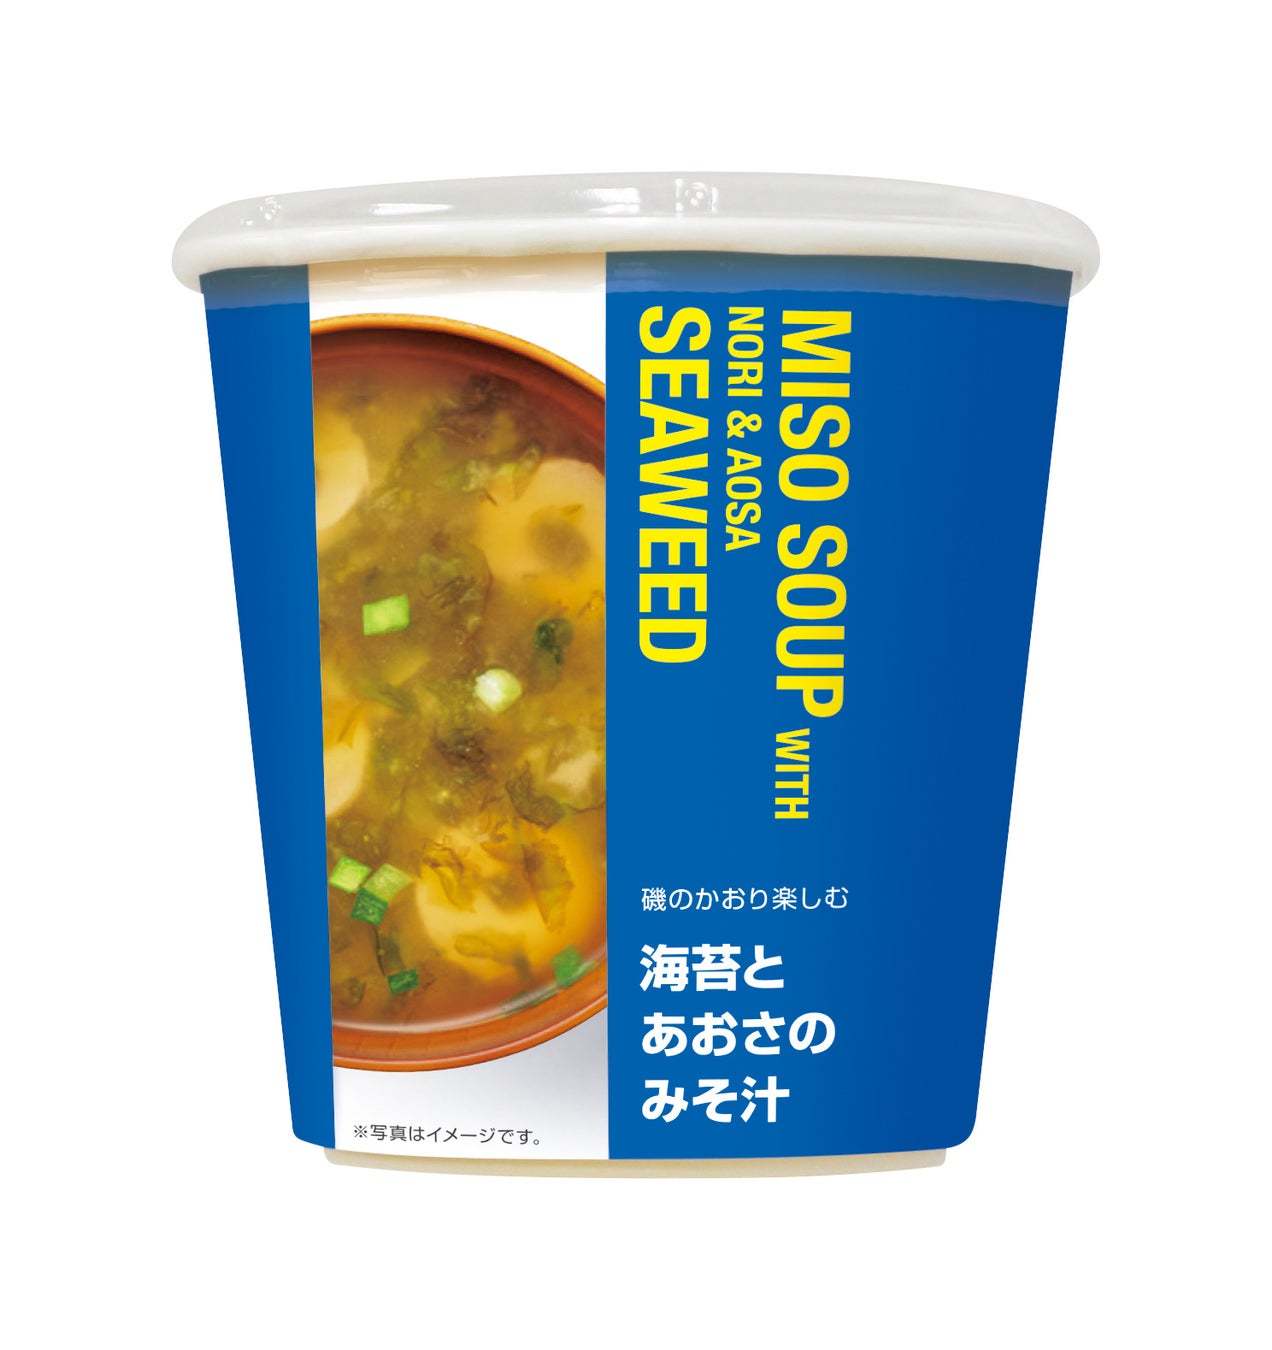 「ほっともっと」お弁当とご一緒に！5種類のカップスープが登場『カップスープ新ラインアップ』